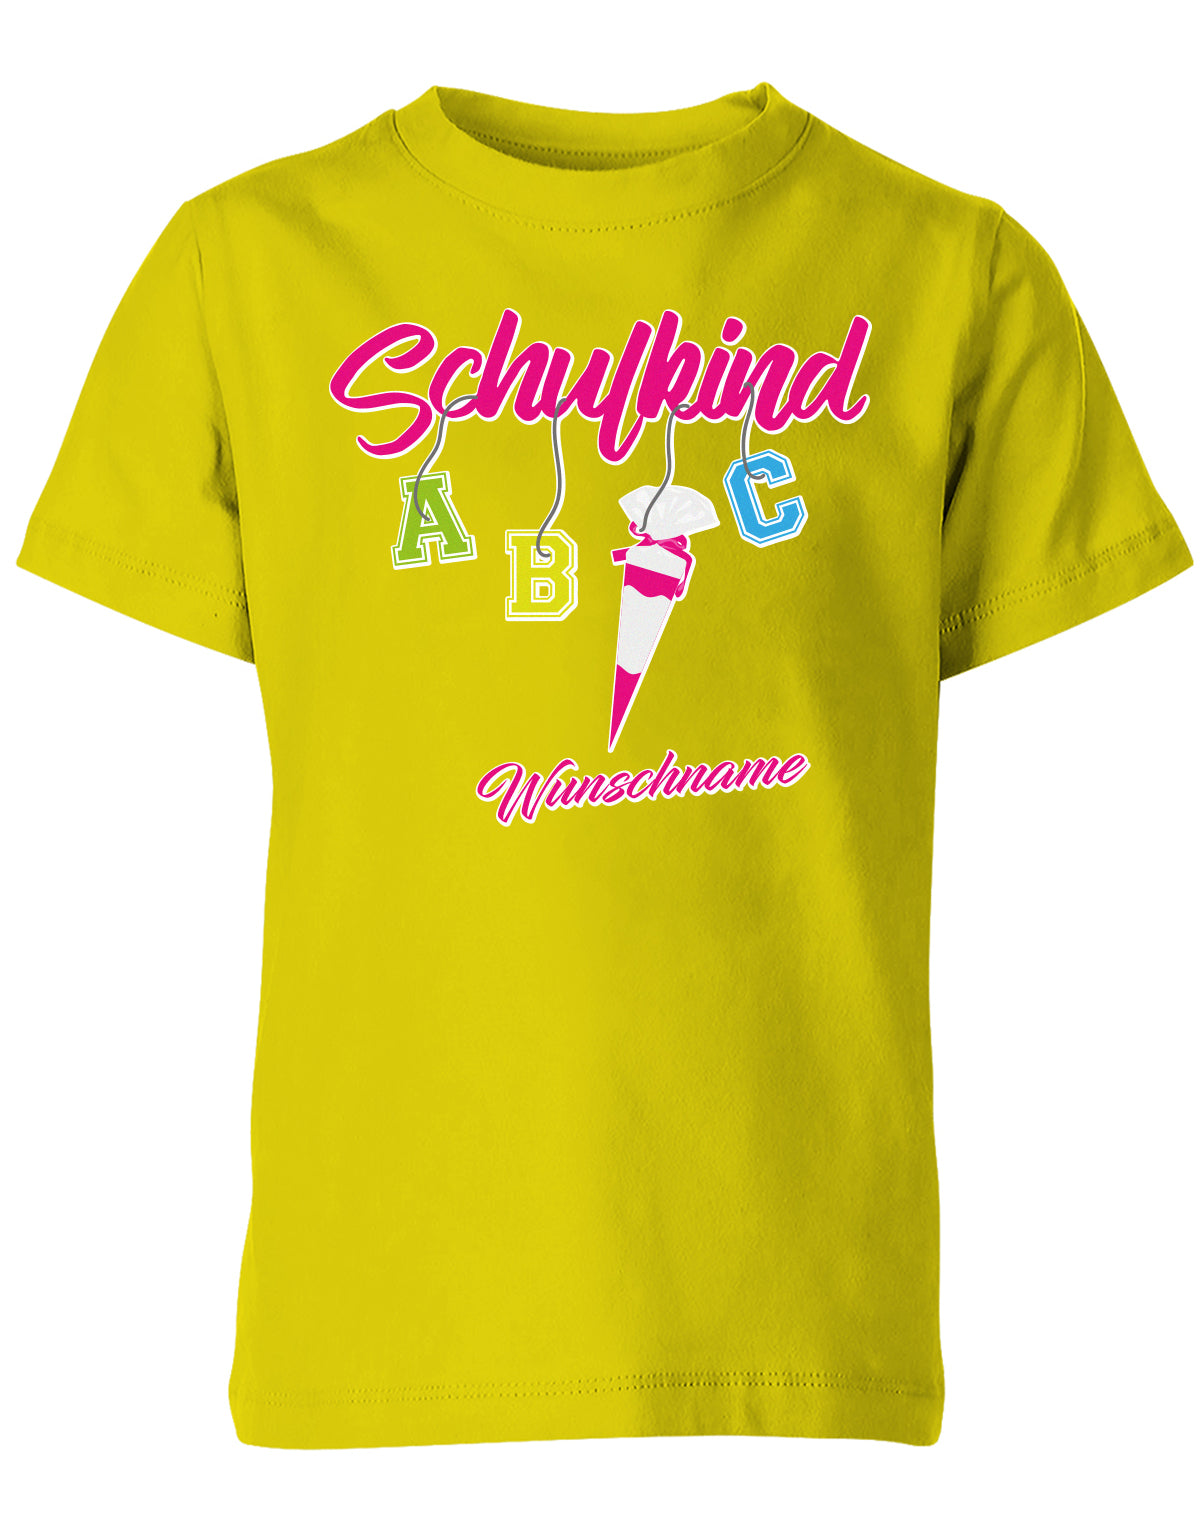 Schulkind ABC Schultüte Wunschname Blau oder Pink Einschulung Kinder T-Shirt Gelb Pink